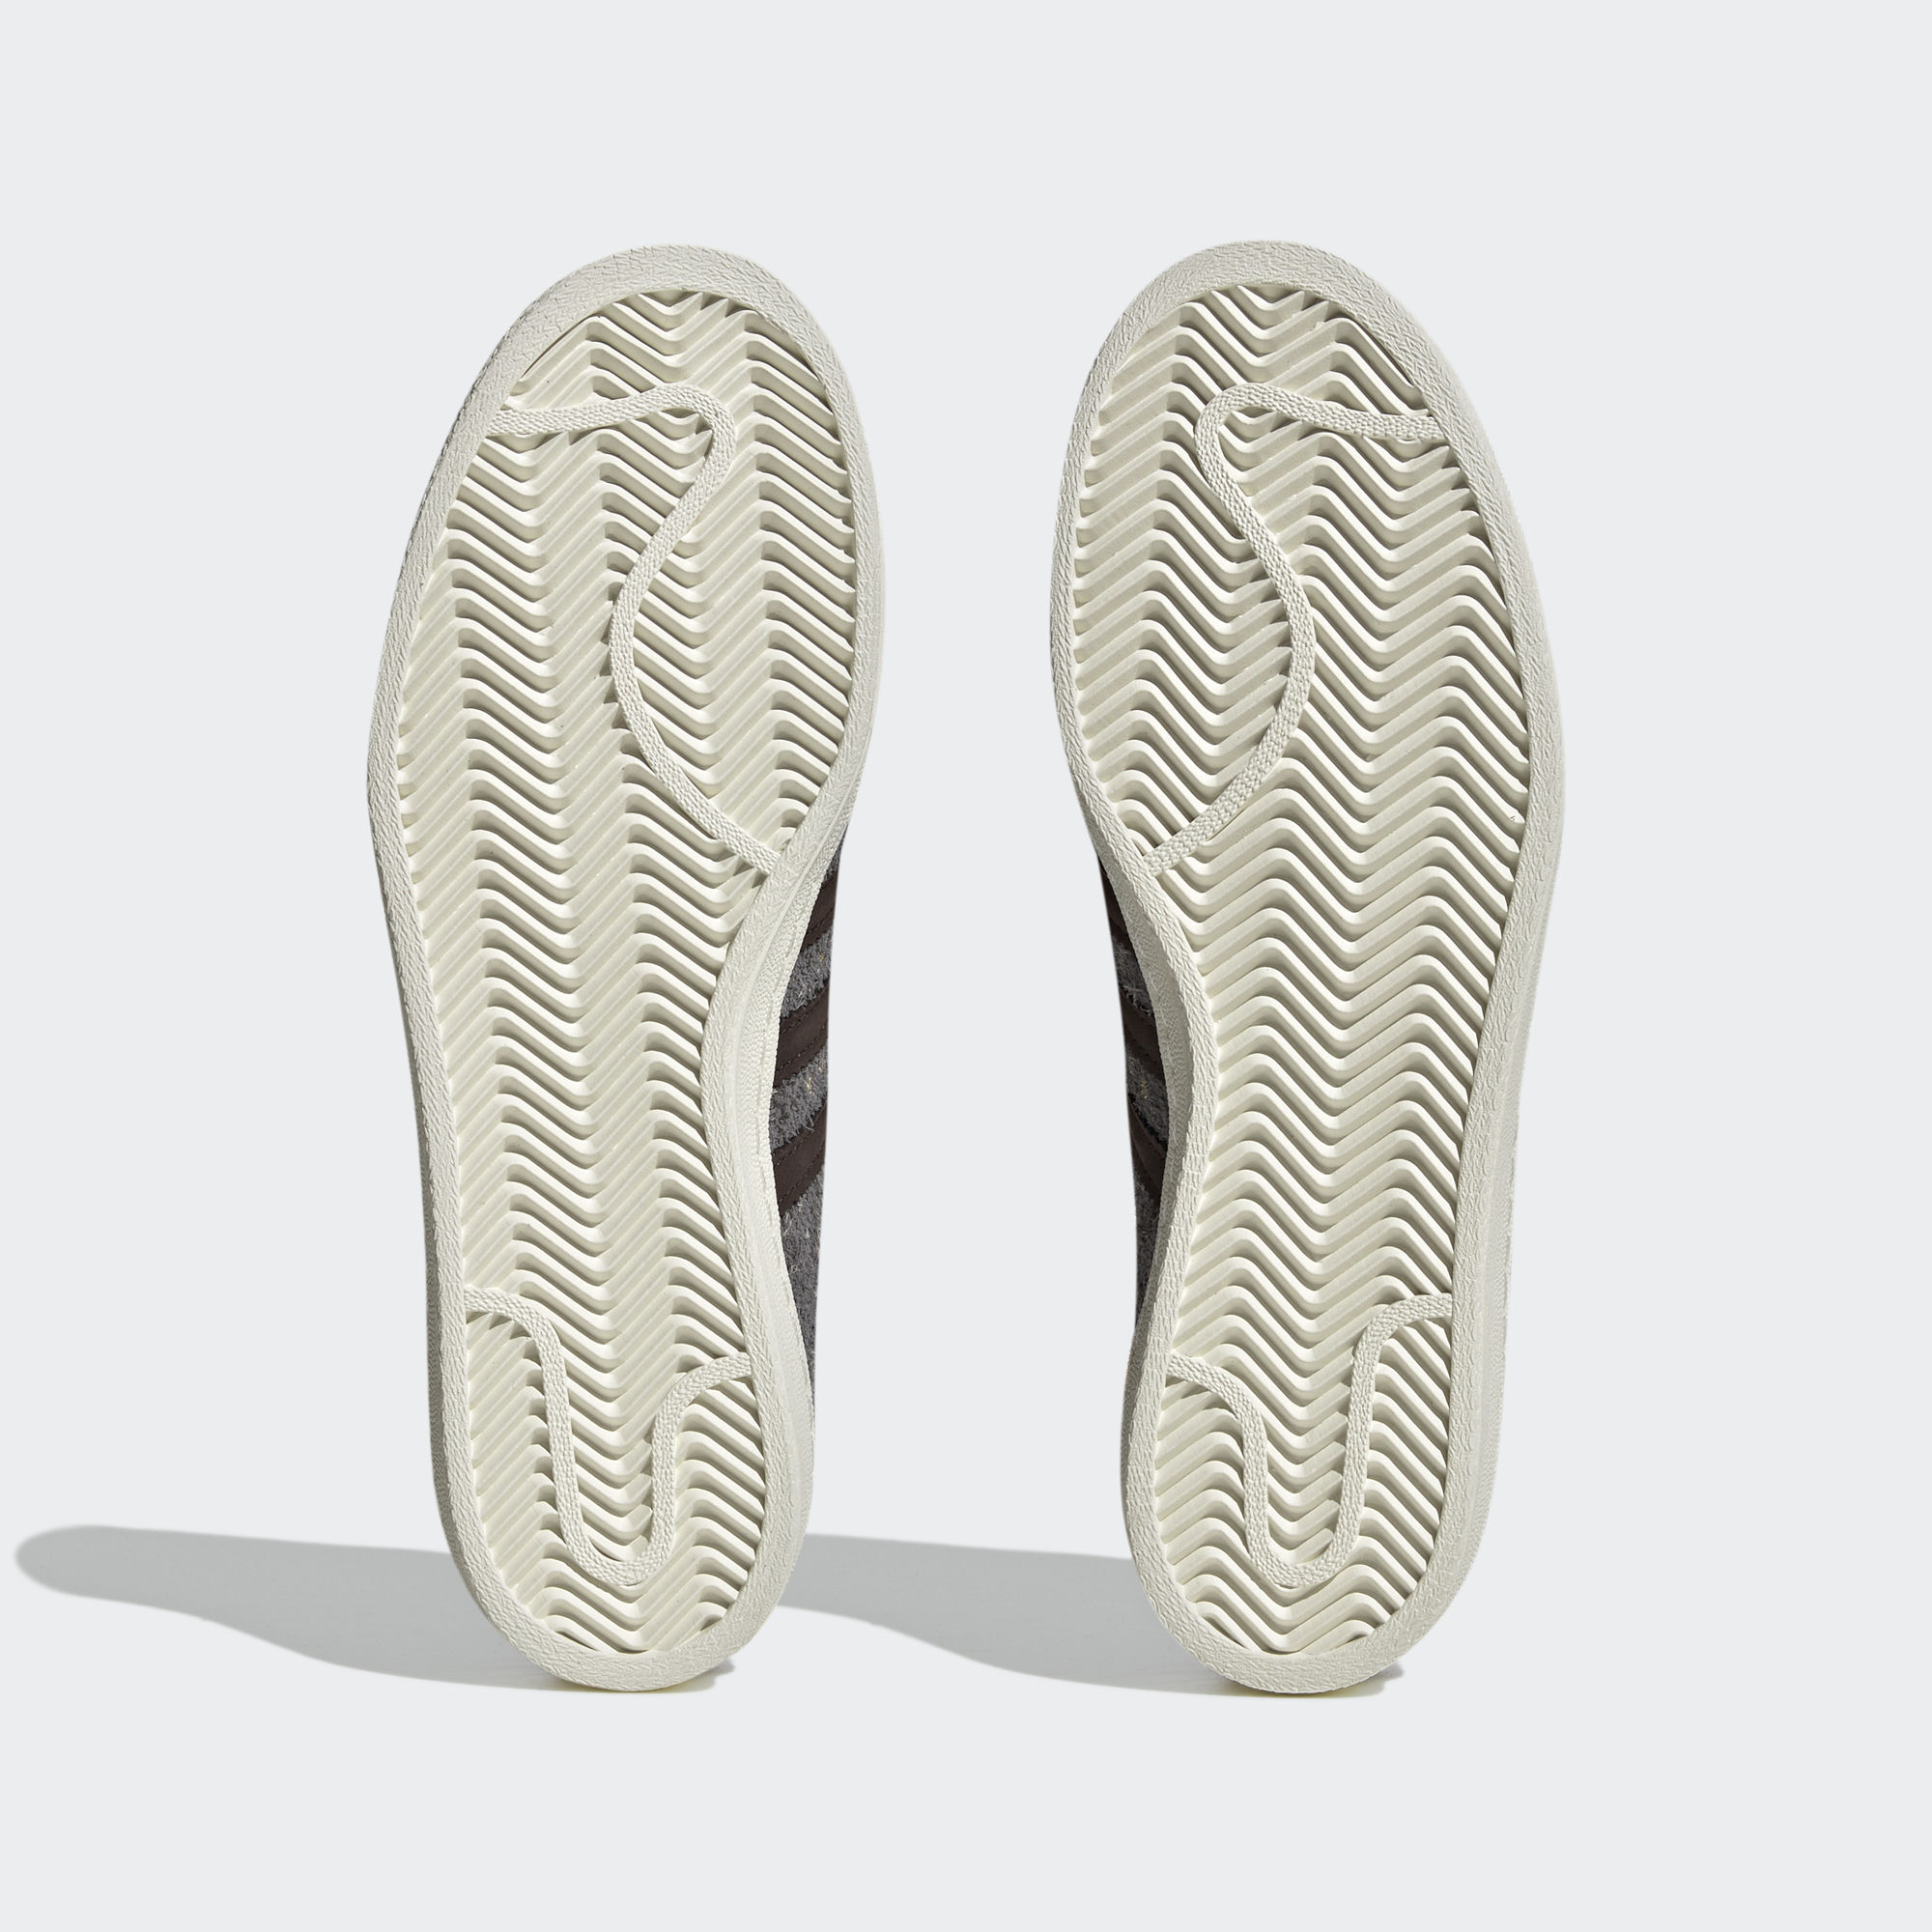 CAMPUS BODEGA X BEAMS 運動鞋- 灰色| 男子,女子| adidas(愛迪達)香港